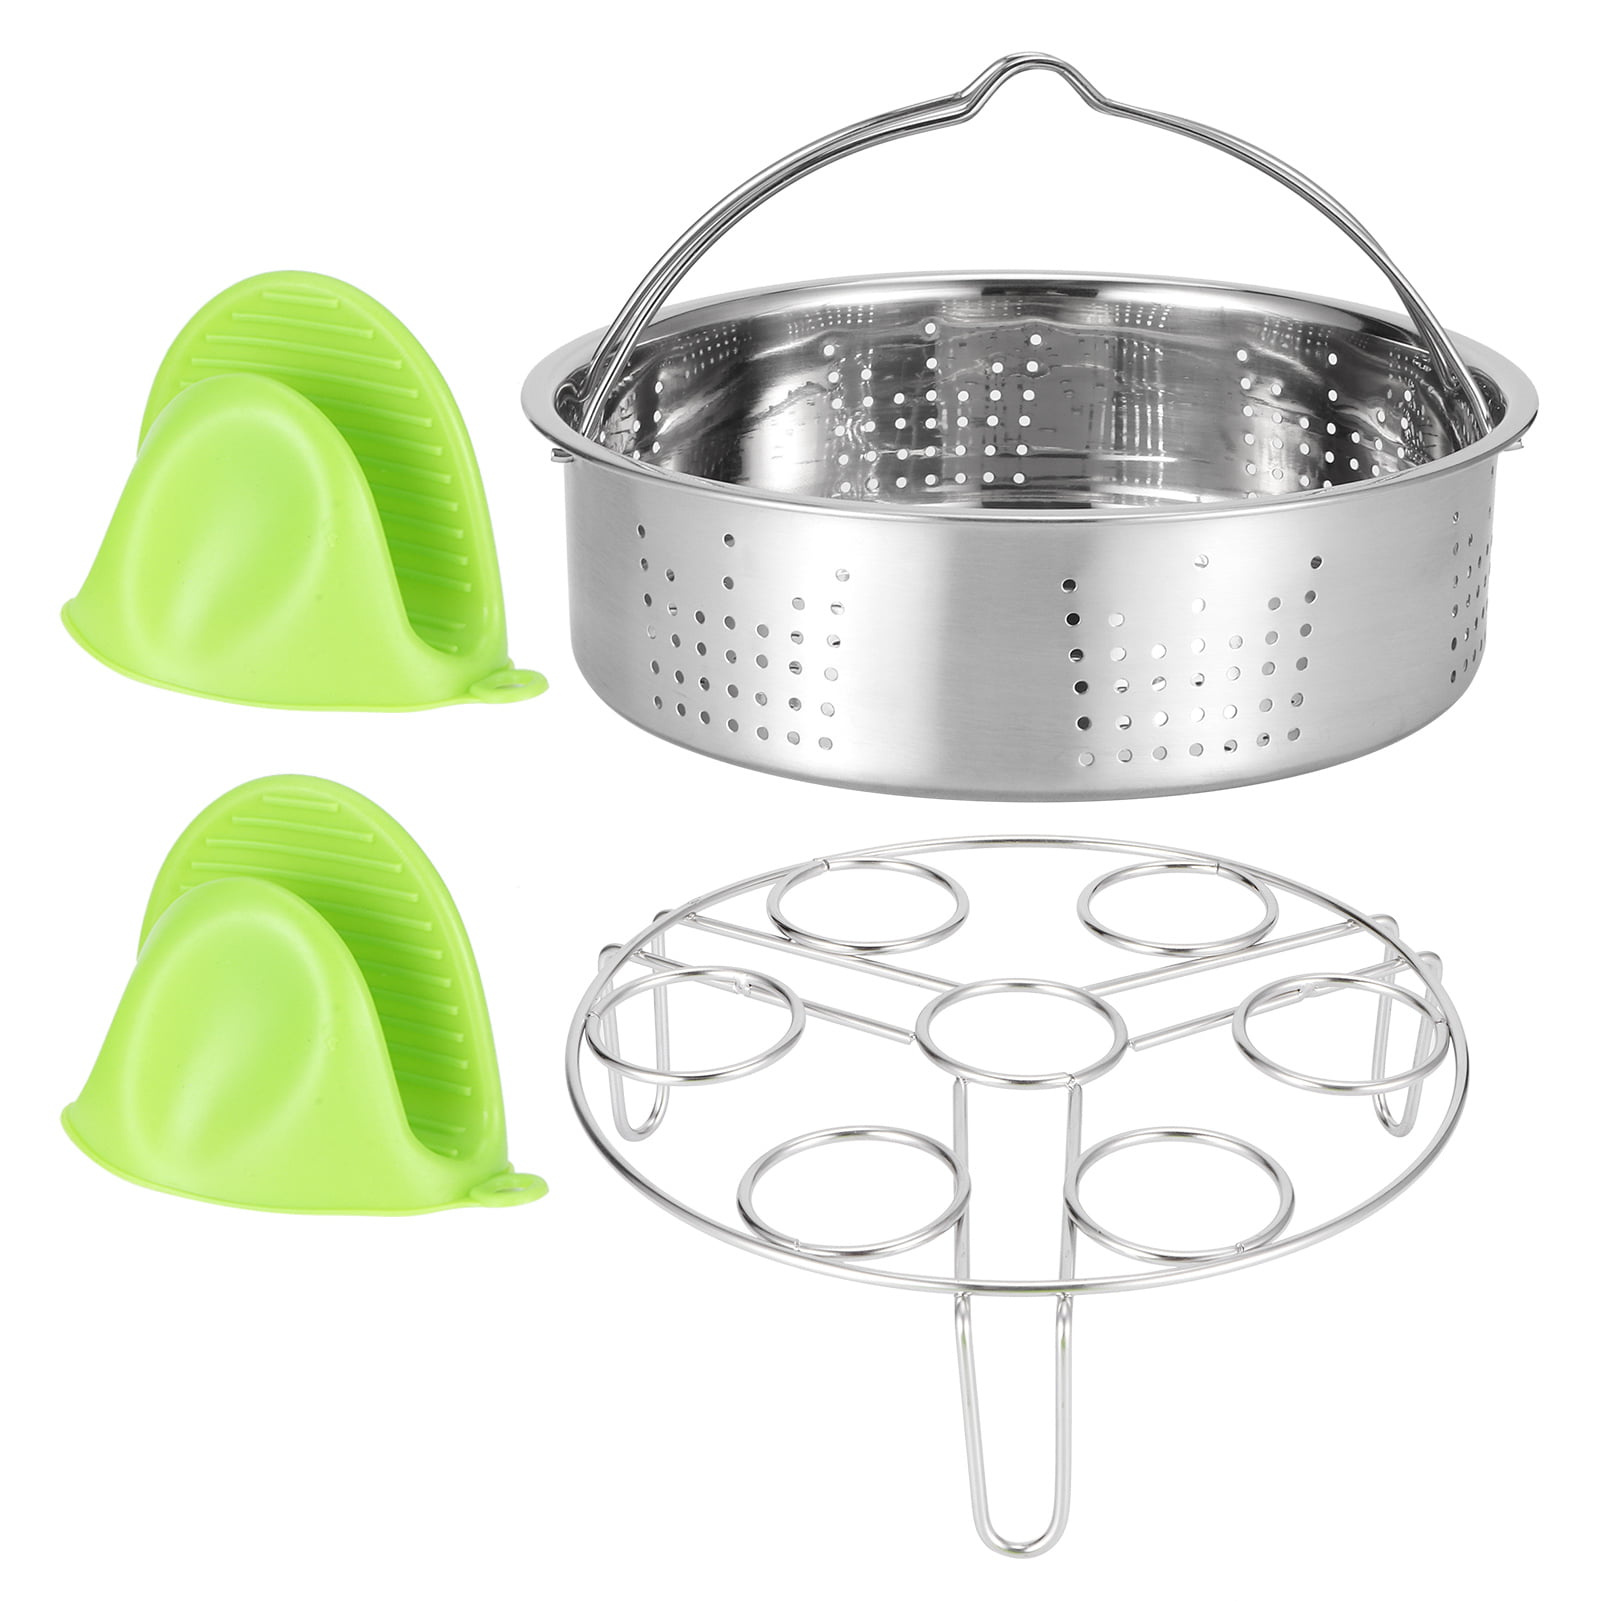 New Stainless Steel-Egg Steamer Rack For Pressure Cooker Basket Kitchen Tool 